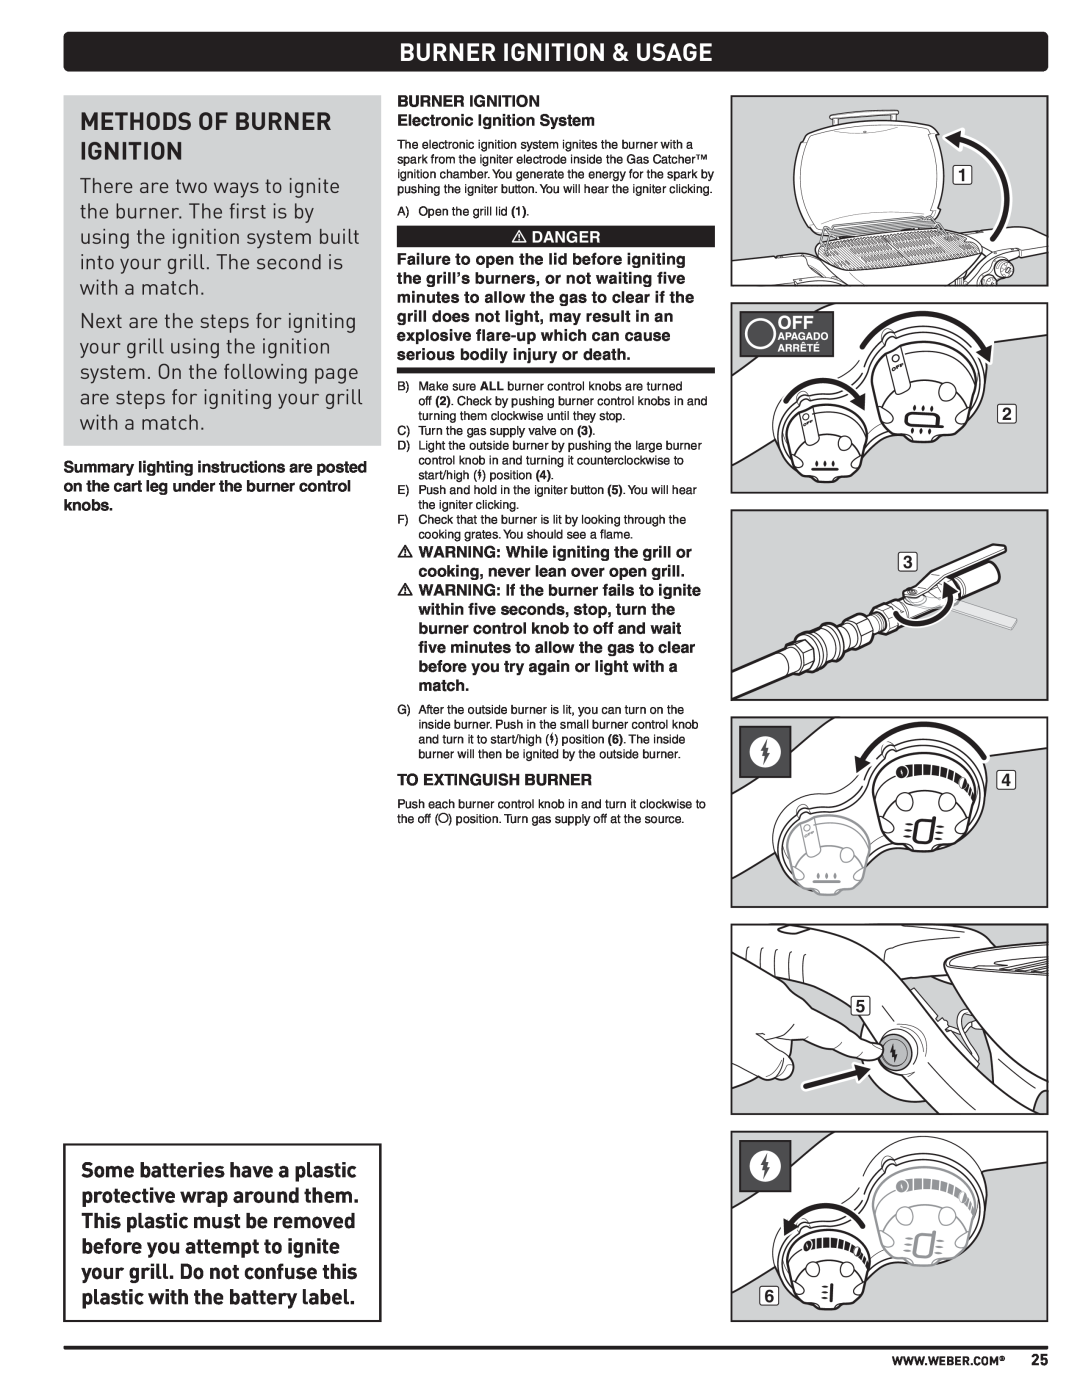 Weber 57515 manual Methods Of Burner Ignition, Burner Ignition & Usage 